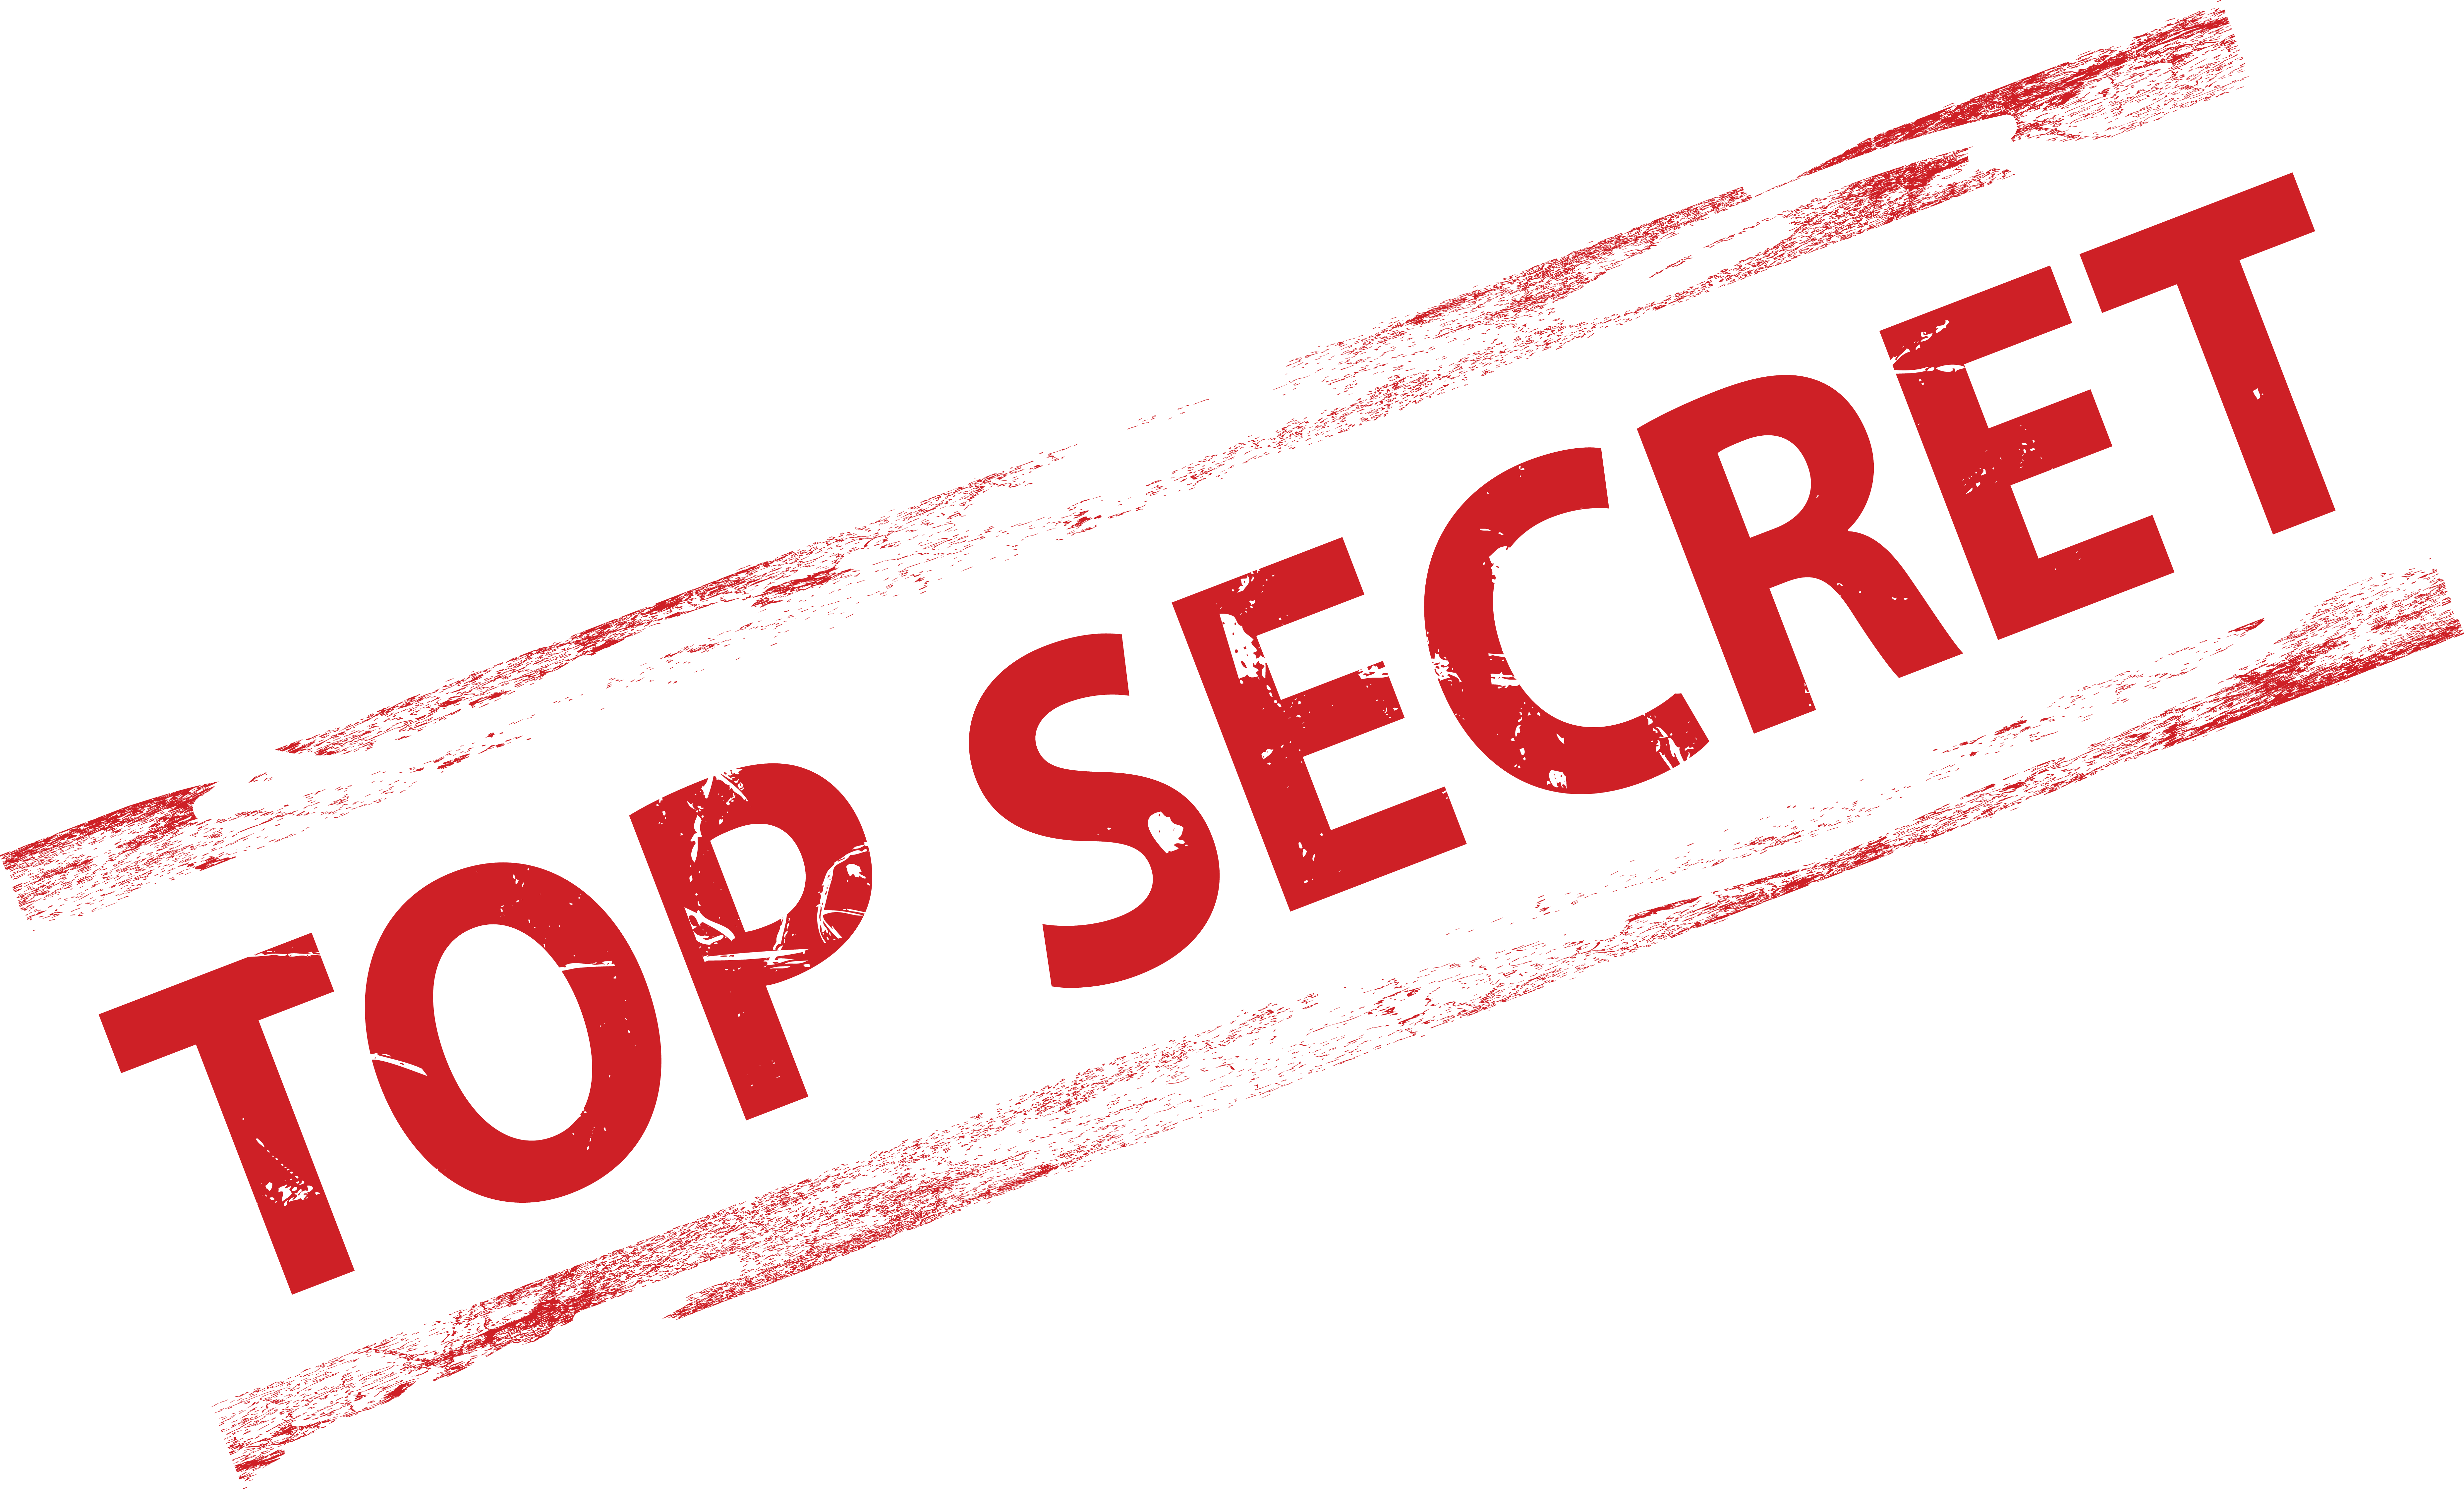 Top_secret